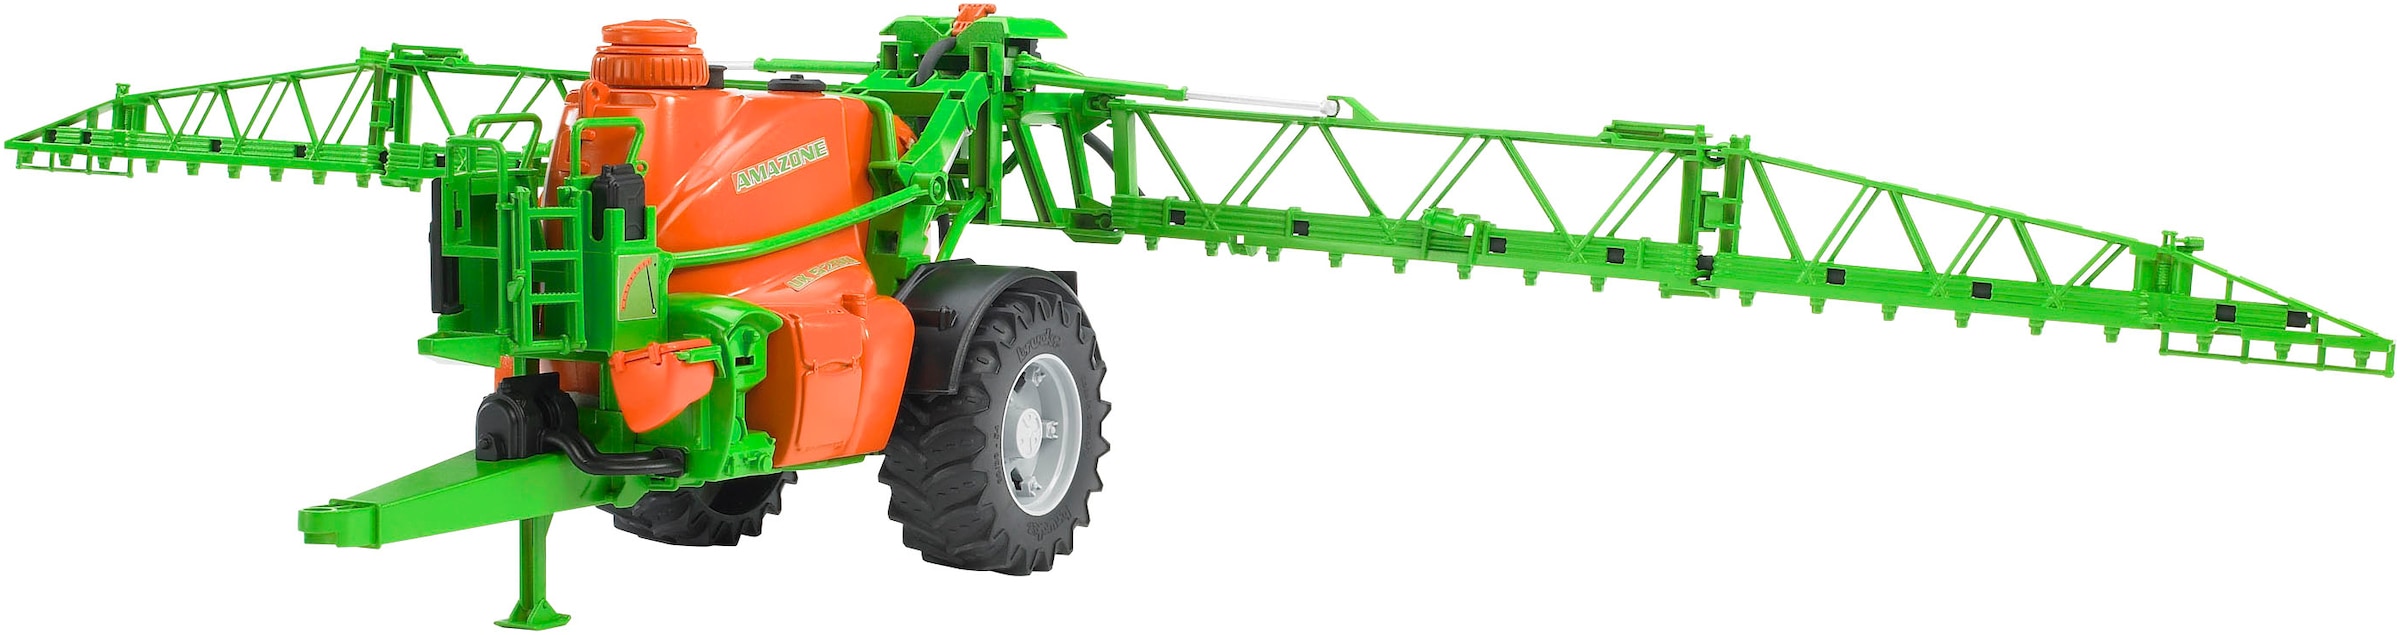 Spielzeug-Landmaschine »Amazone Anhängefeldspritze UX 5200 38 cm (02207)«, Made in Europe